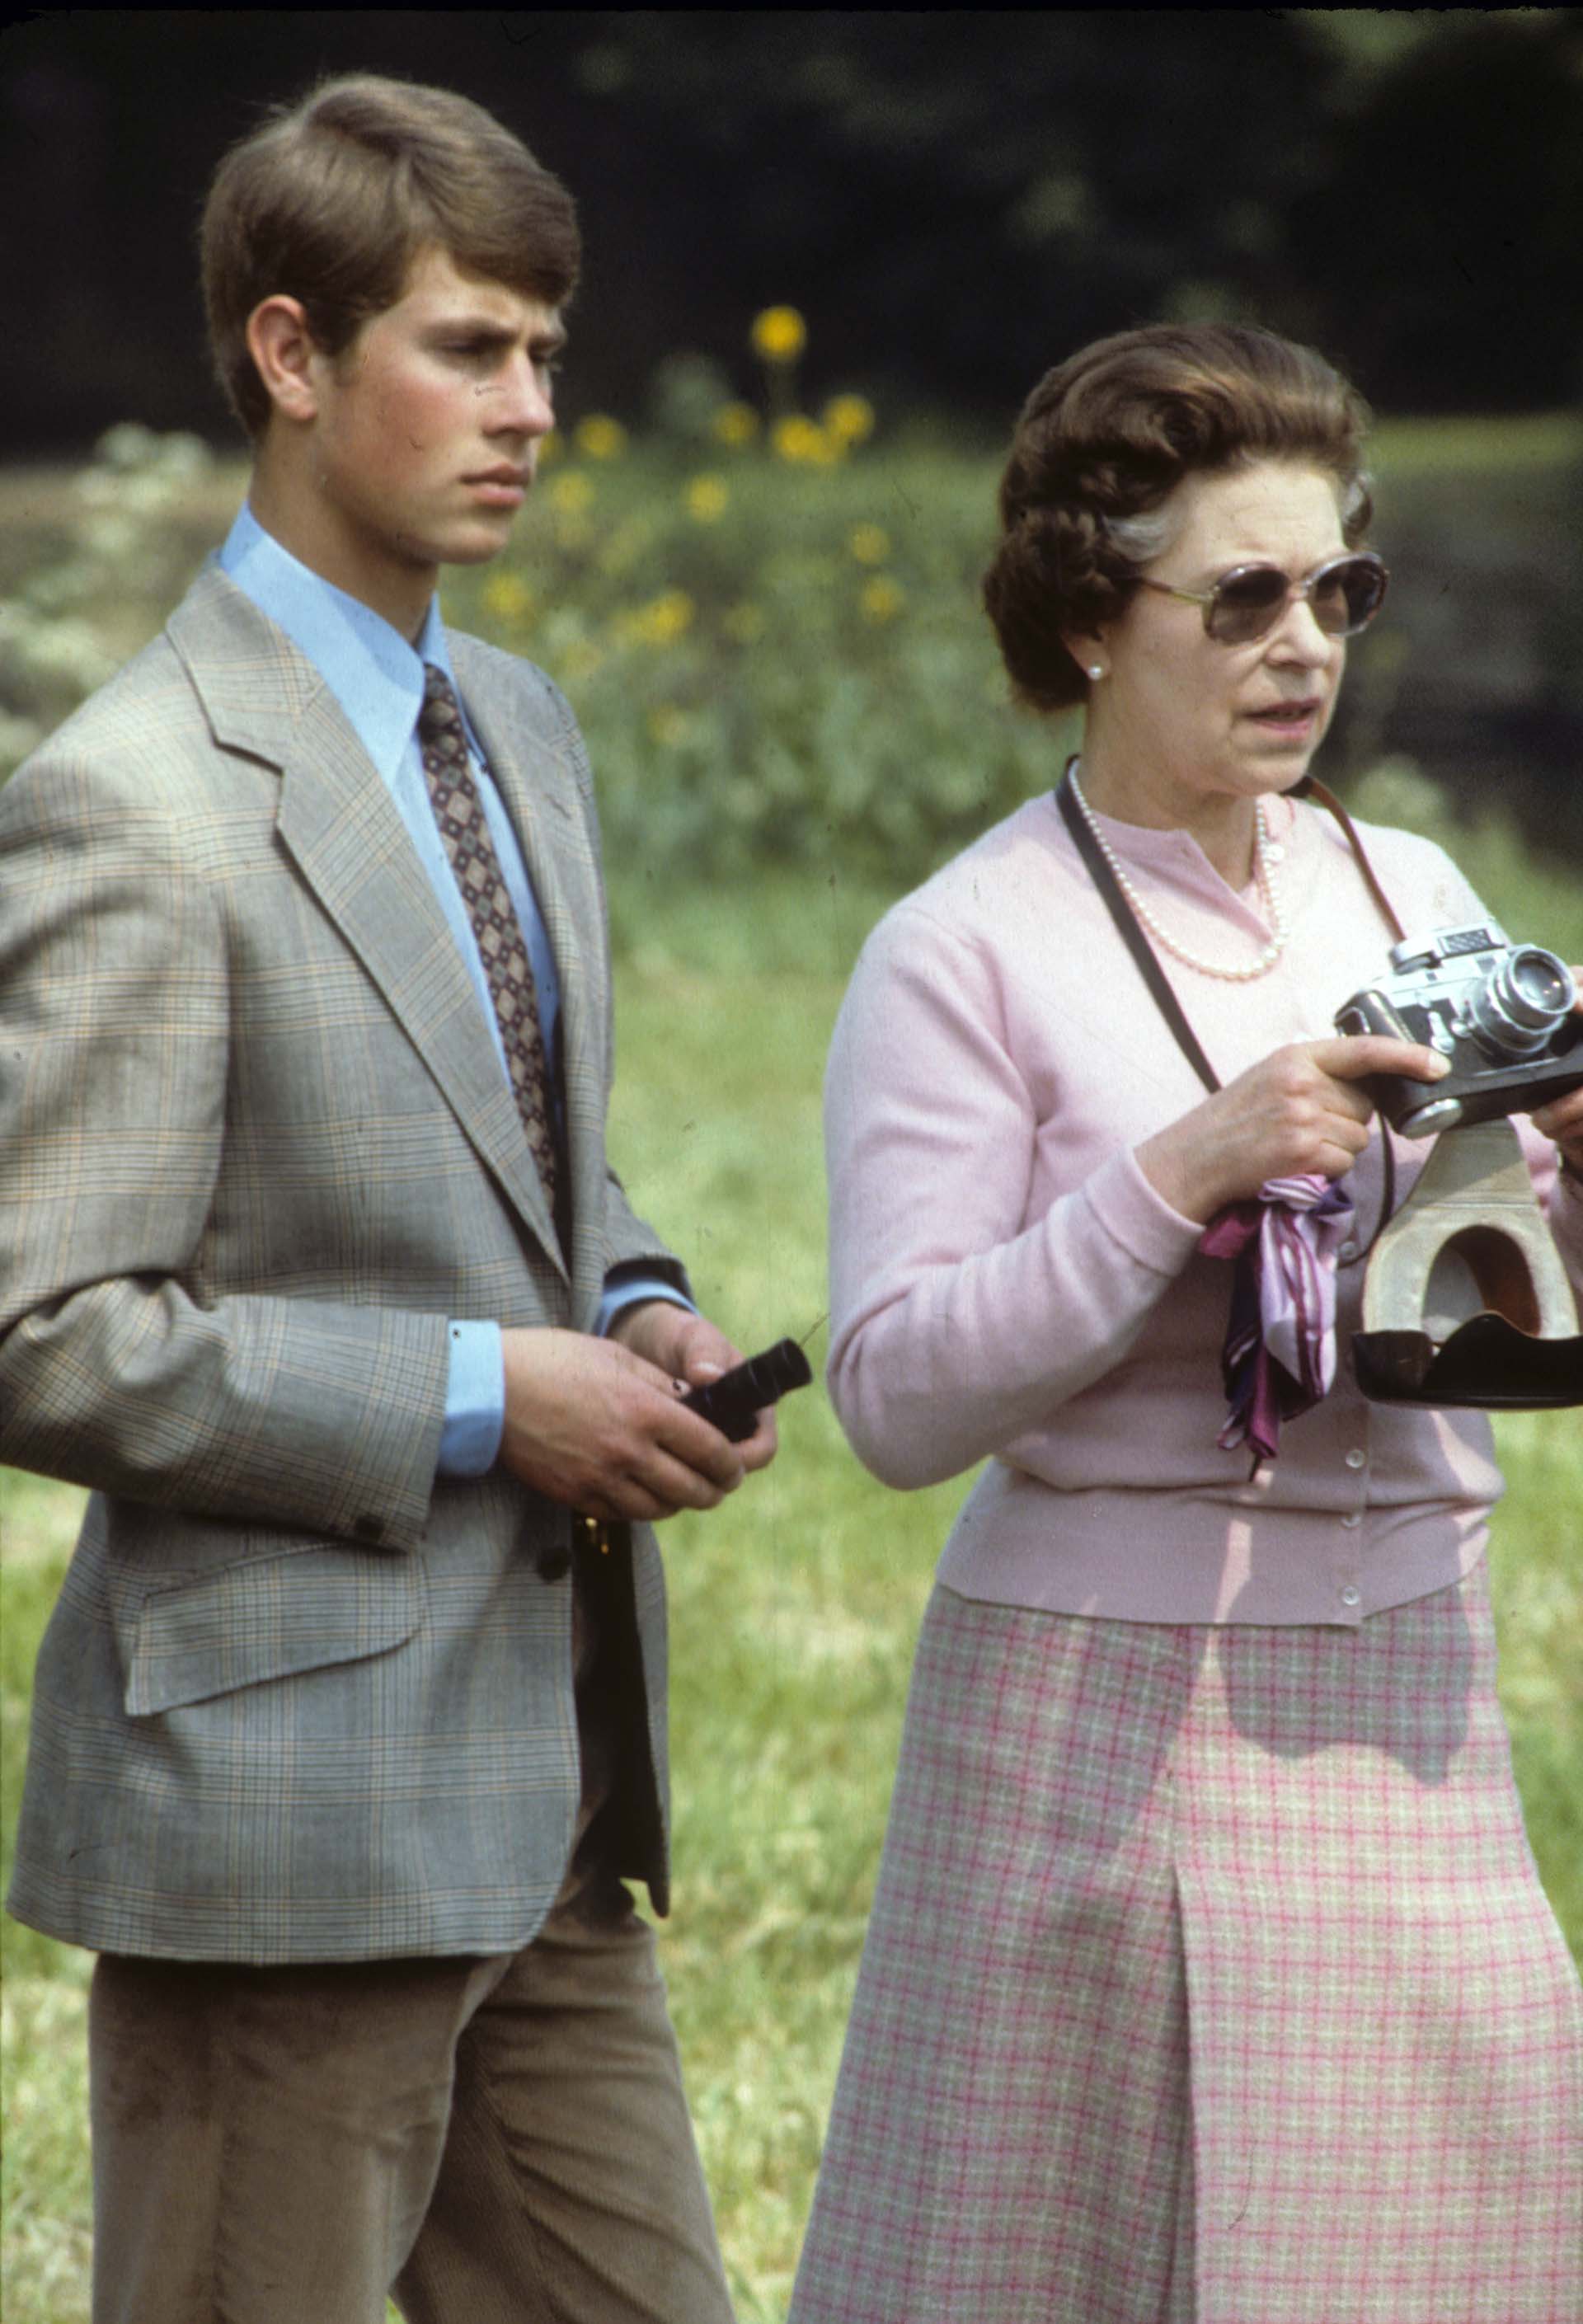 La reina Isabel II, junto al príncipe Eduardo, tomando fotos durante un show hípico en 1982, Windsor, Inglaterra  (Photo by Anwar Hussein/Getty Images)